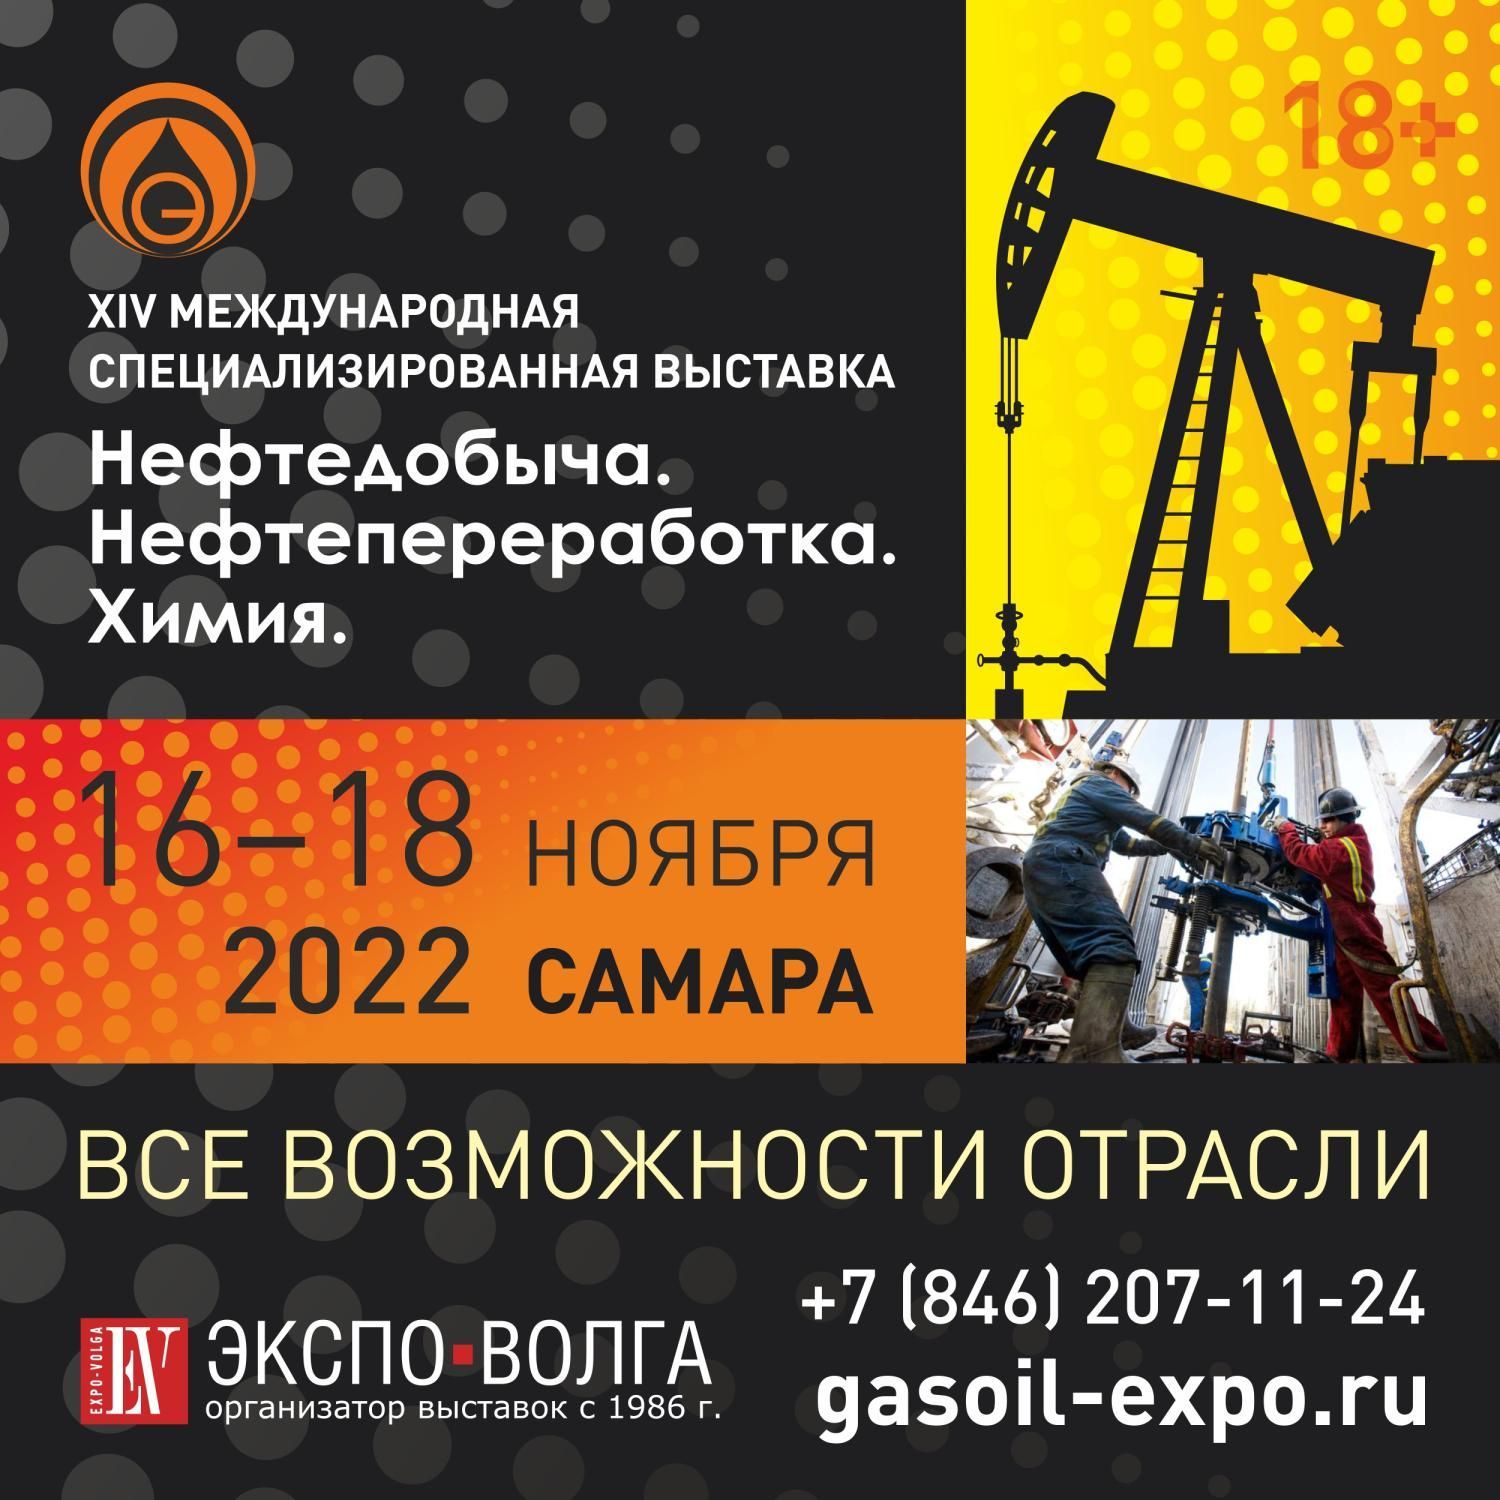 16-18 ноября. Выставка "Нефтедобыча. Нефтепереработка. Химия"